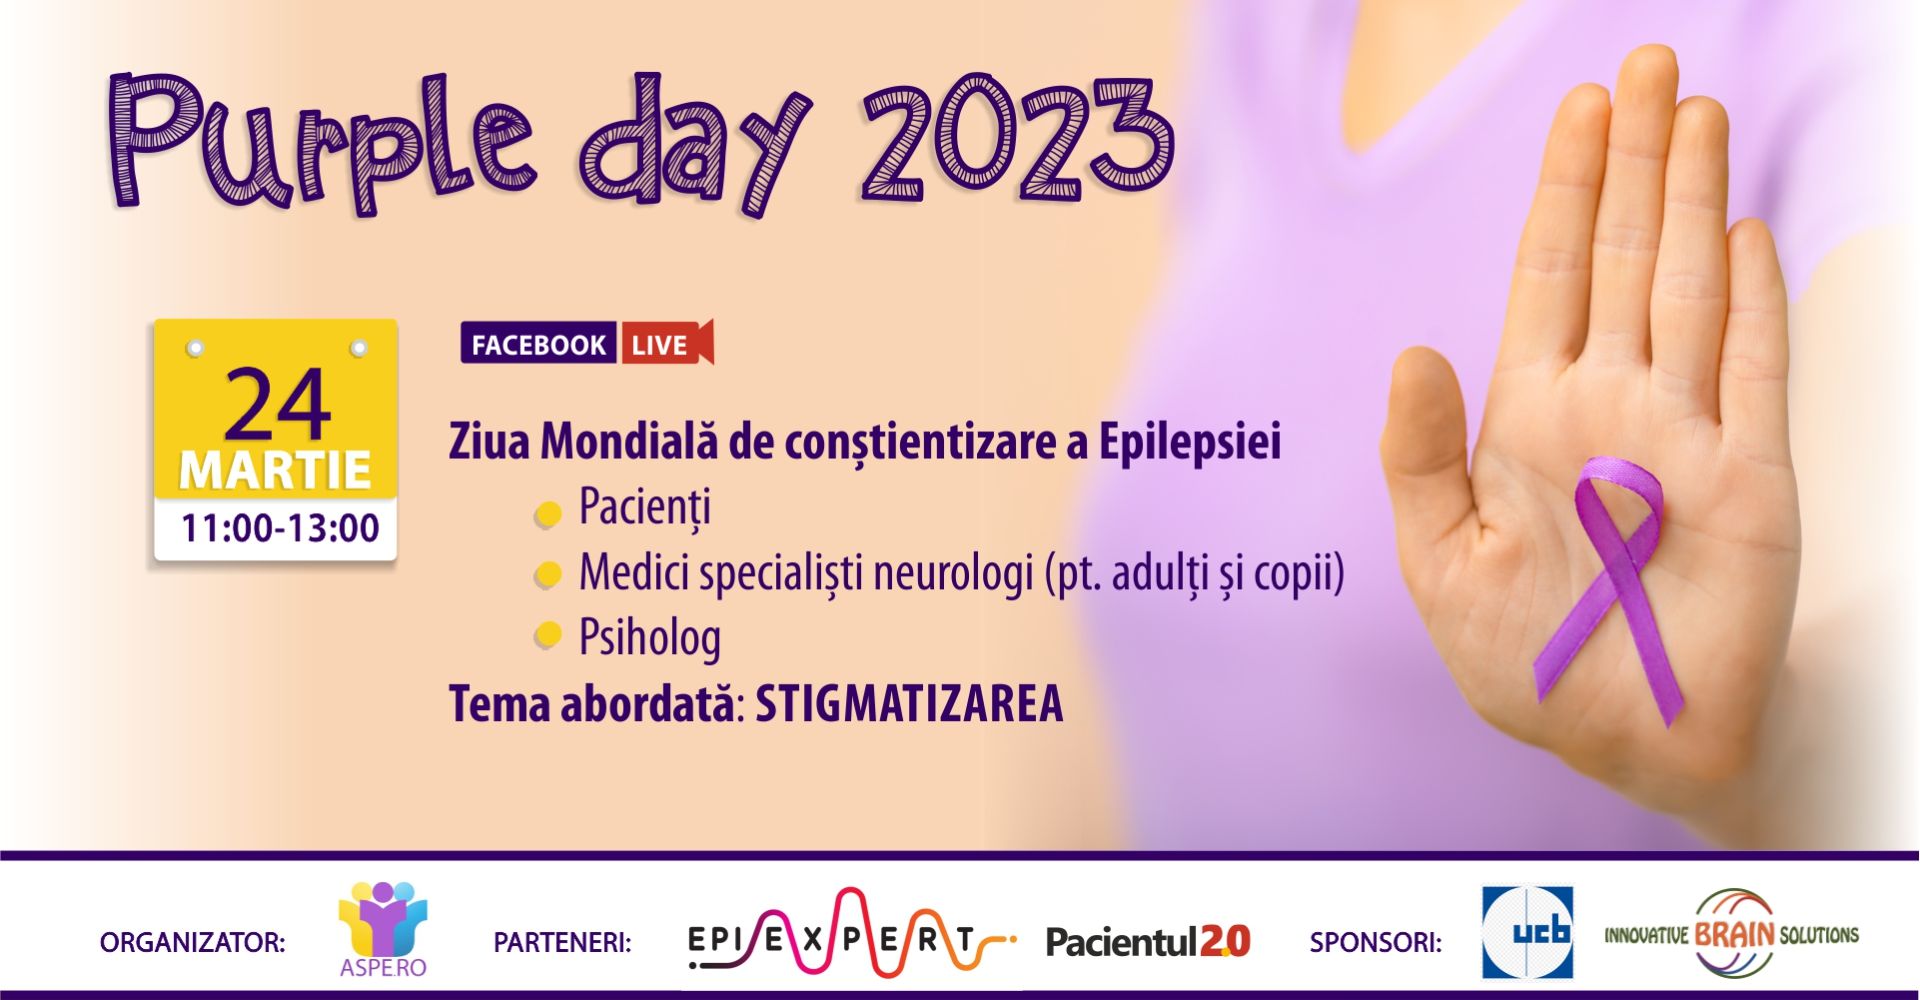 Eveniment live pe Facebook, pe tema stigmatizării persoanelor cu epilepsie